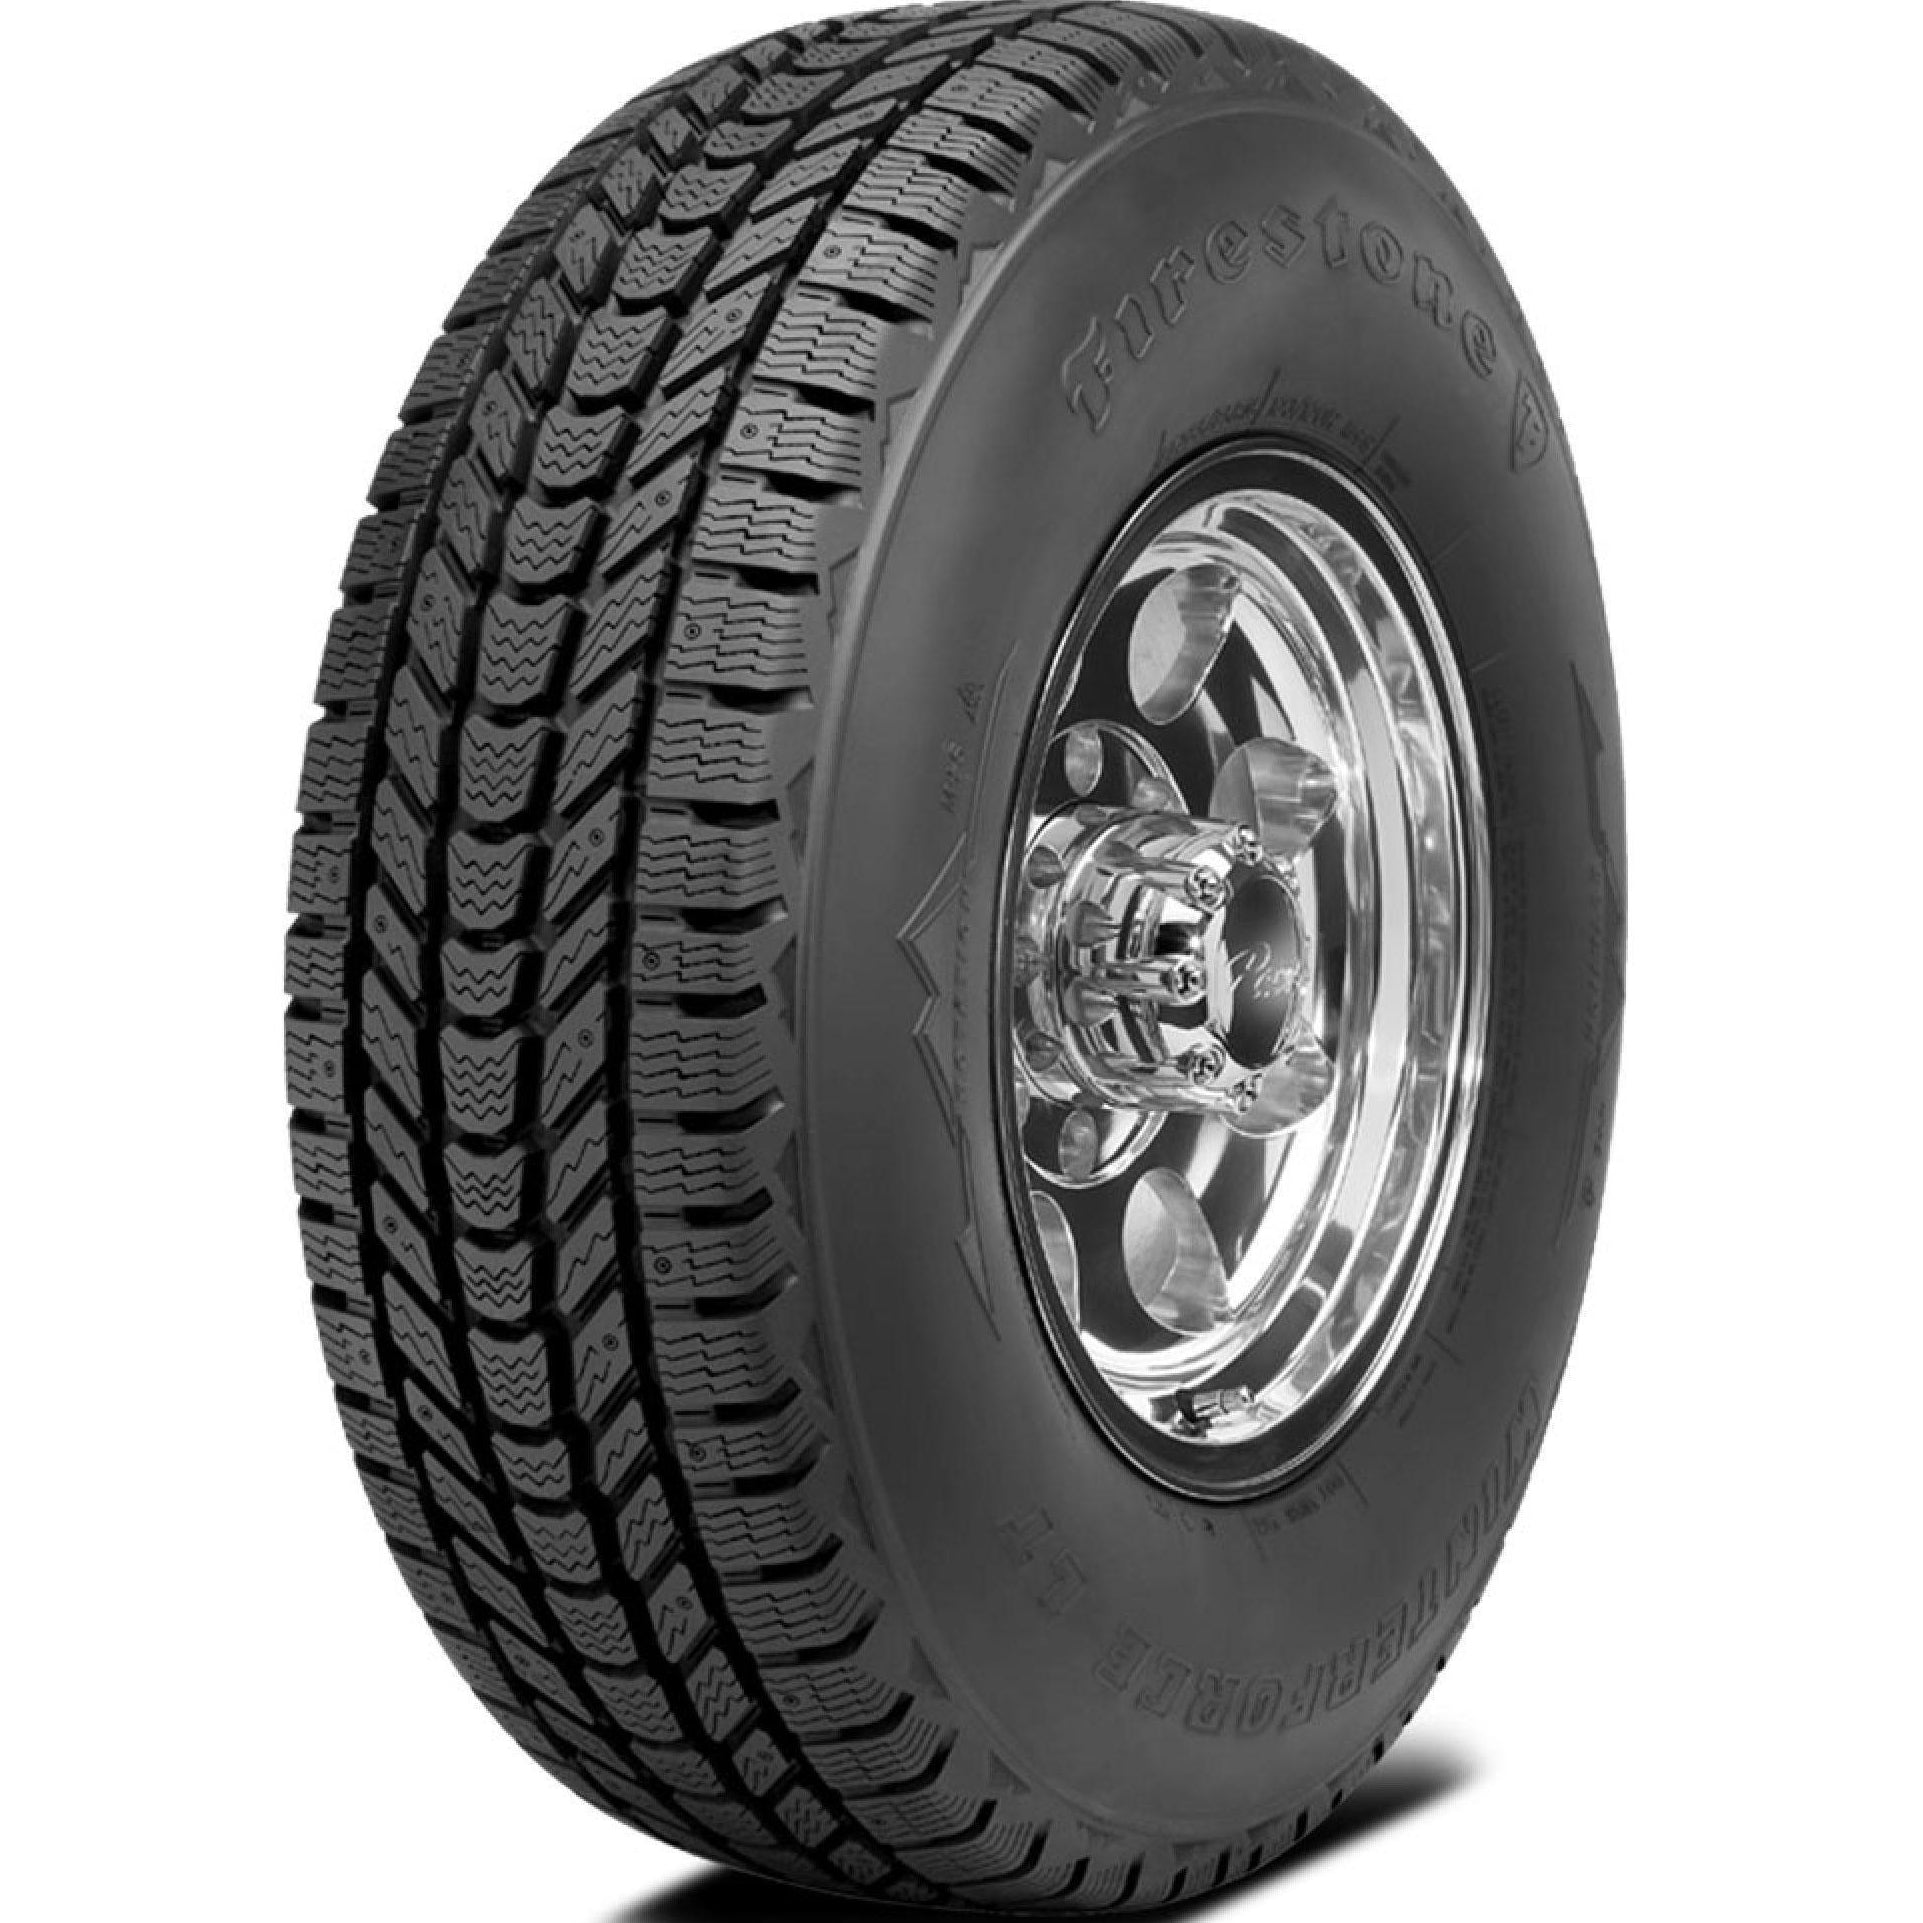 FIRESTONE WINTERFORCE LT LT245/75R16 (30.5X9.7R 16) Tires